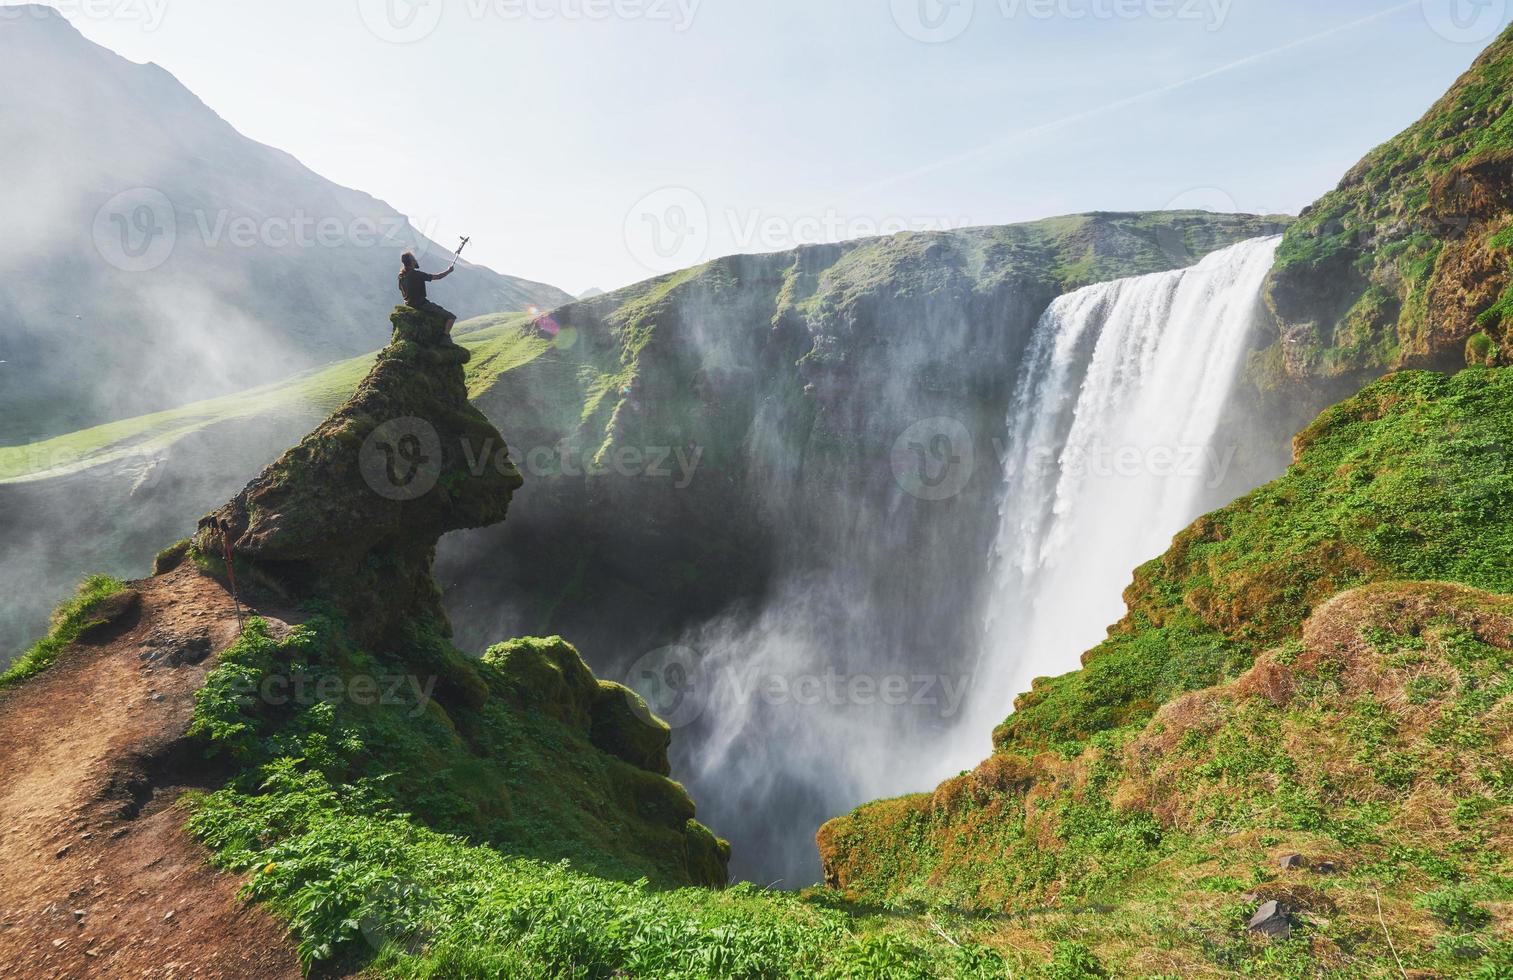 stort vattenfall skogafoss på söder om Island nära staden skogar. dramatisk och pittoresk scen foto